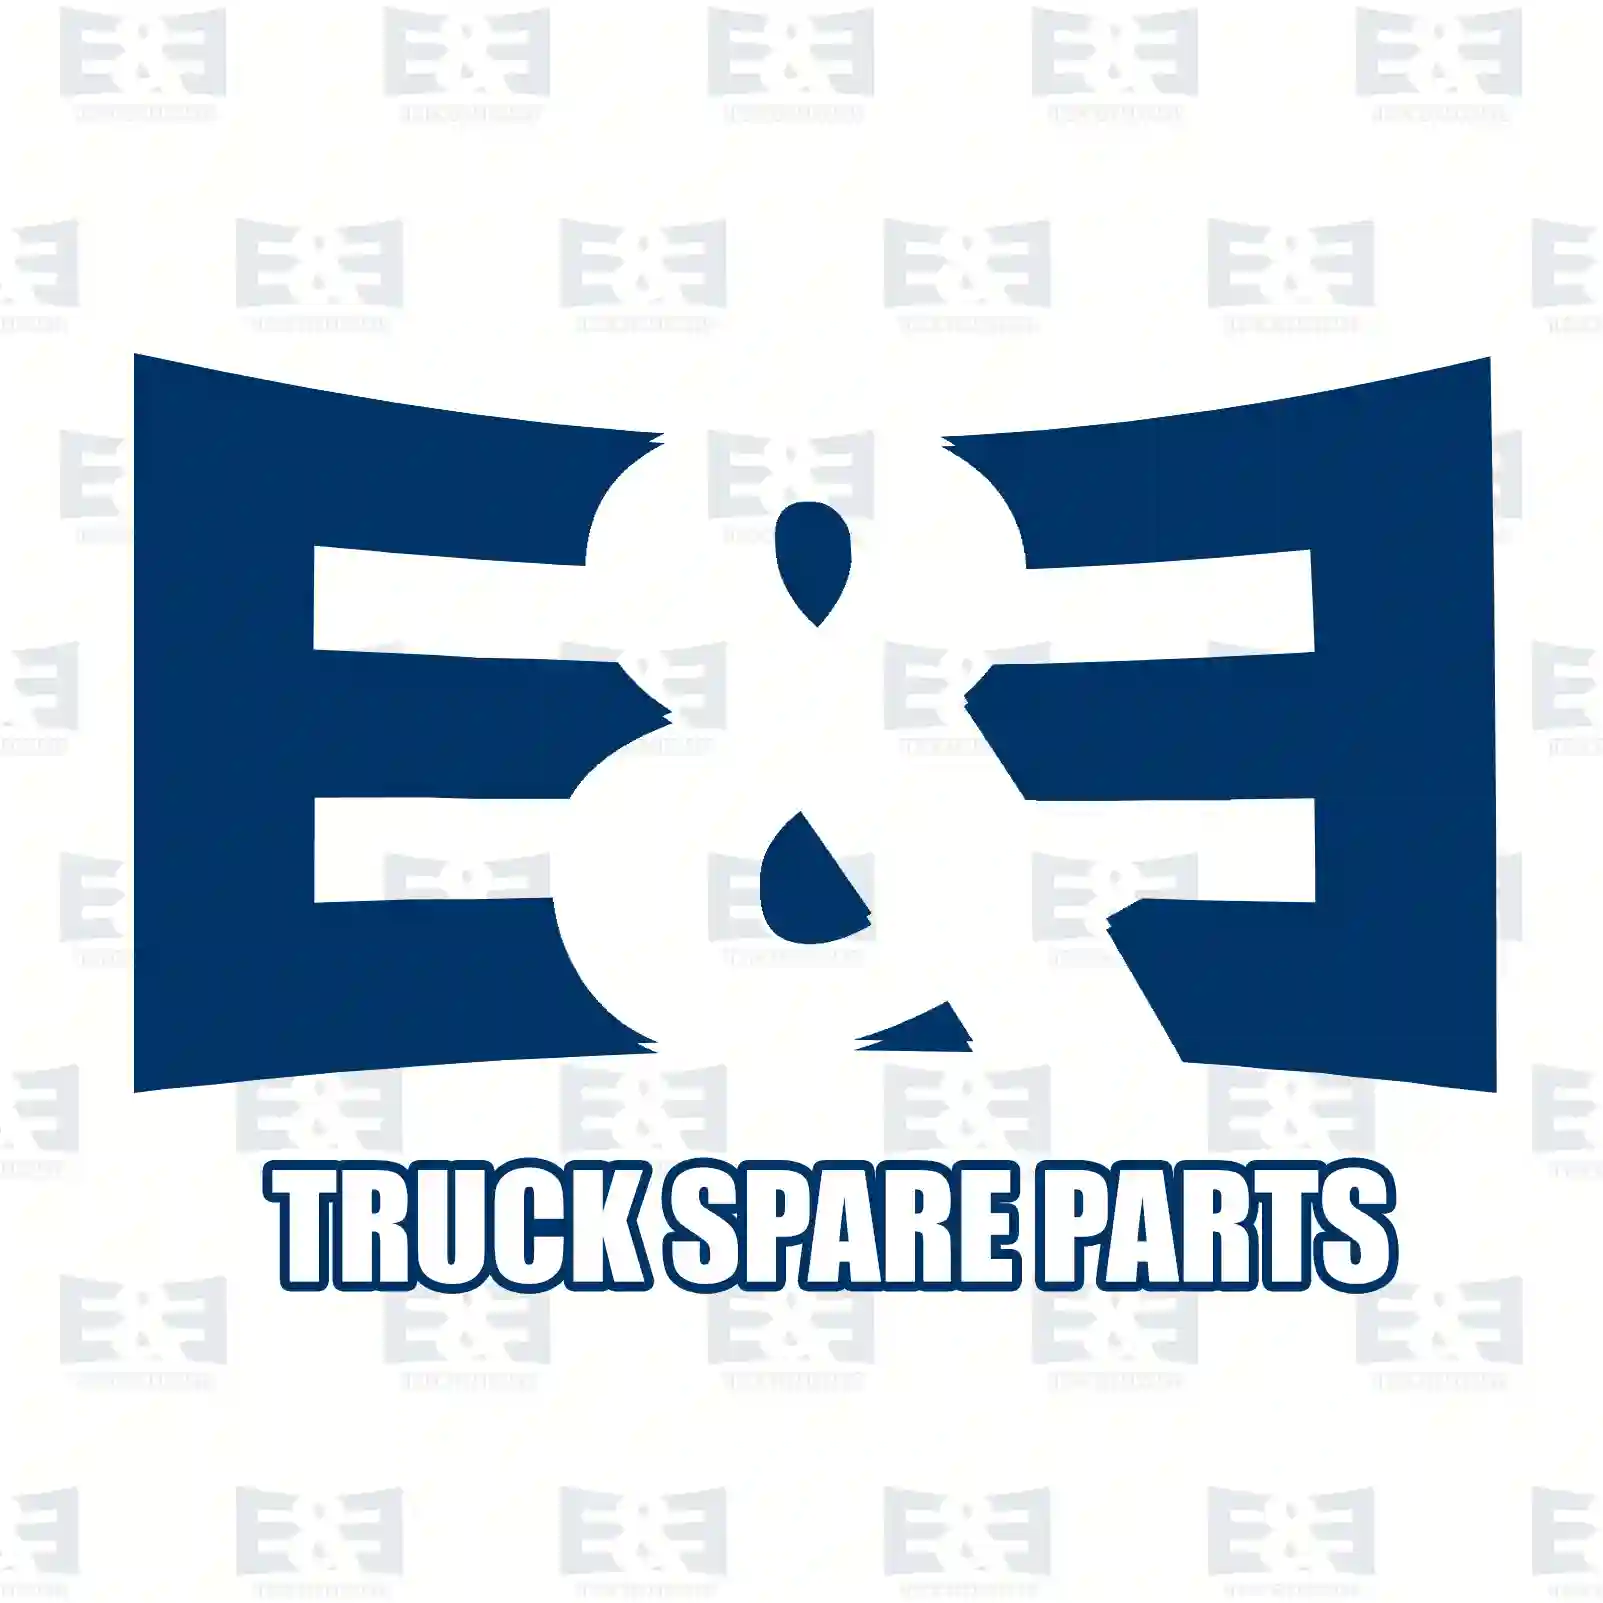 Step, right, upper, 2E2289672, 1310590, 1535036 ||  2E2289672 E&E Truck Spare Parts | Truck Spare Parts, Auotomotive Spare Parts Step, right, upper, 2E2289672, 1310590, 1535036 ||  2E2289672 E&E Truck Spare Parts | Truck Spare Parts, Auotomotive Spare Parts